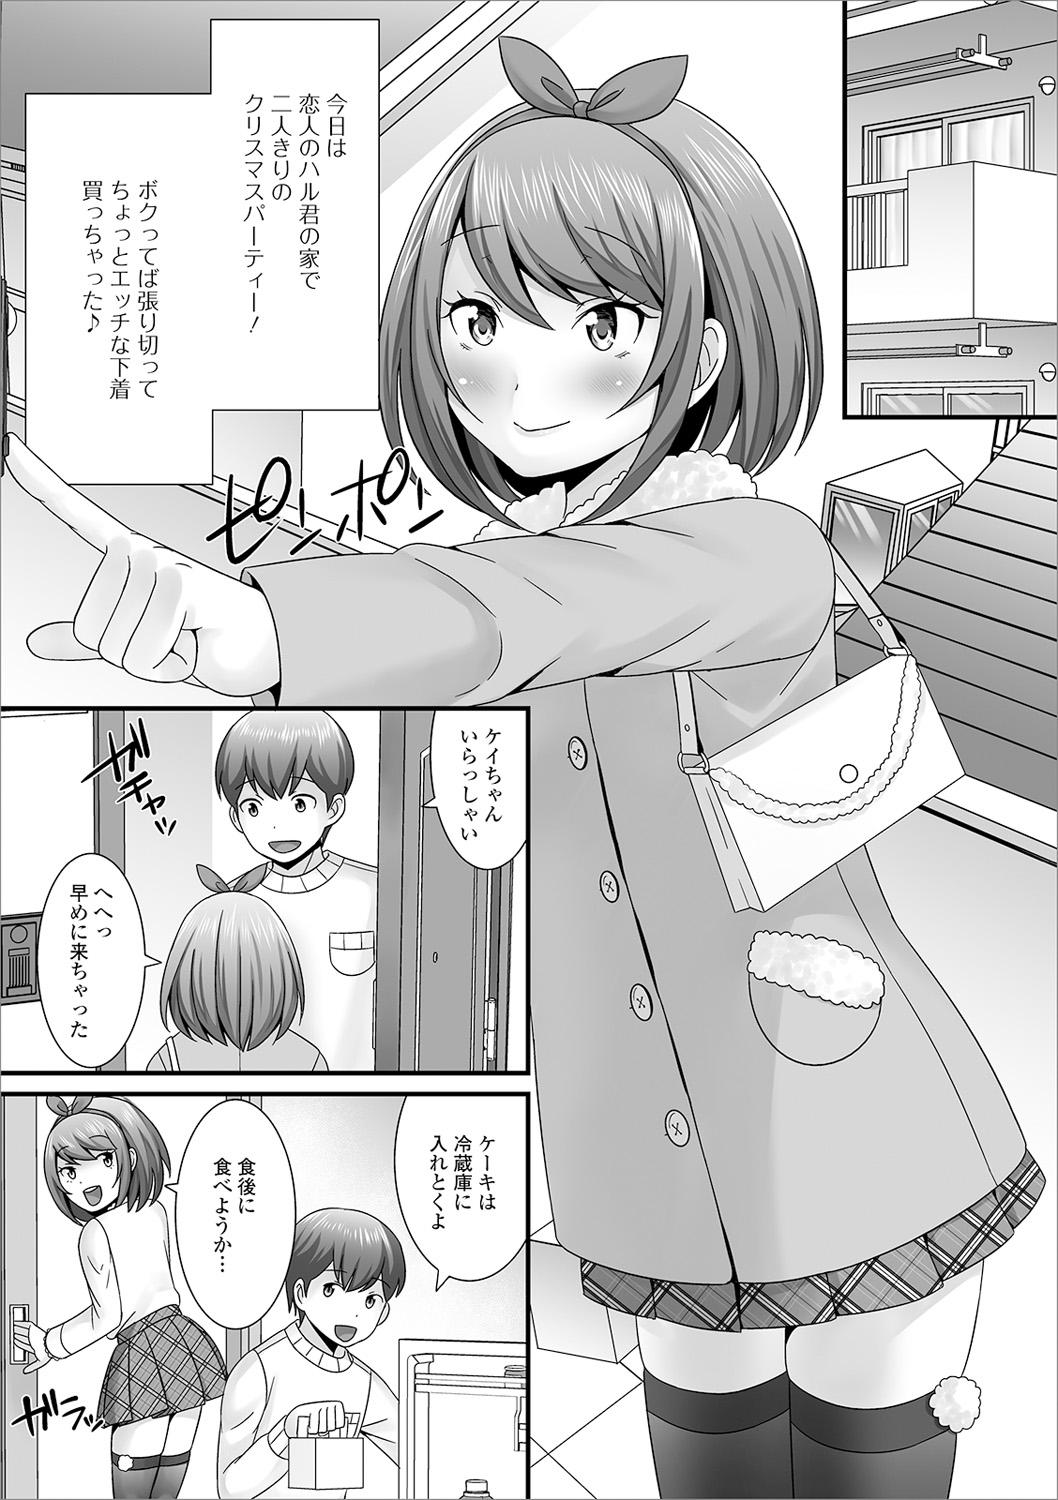 Girlfriends Otoko no musume no e Chie china nichijō Harcore - Page 7